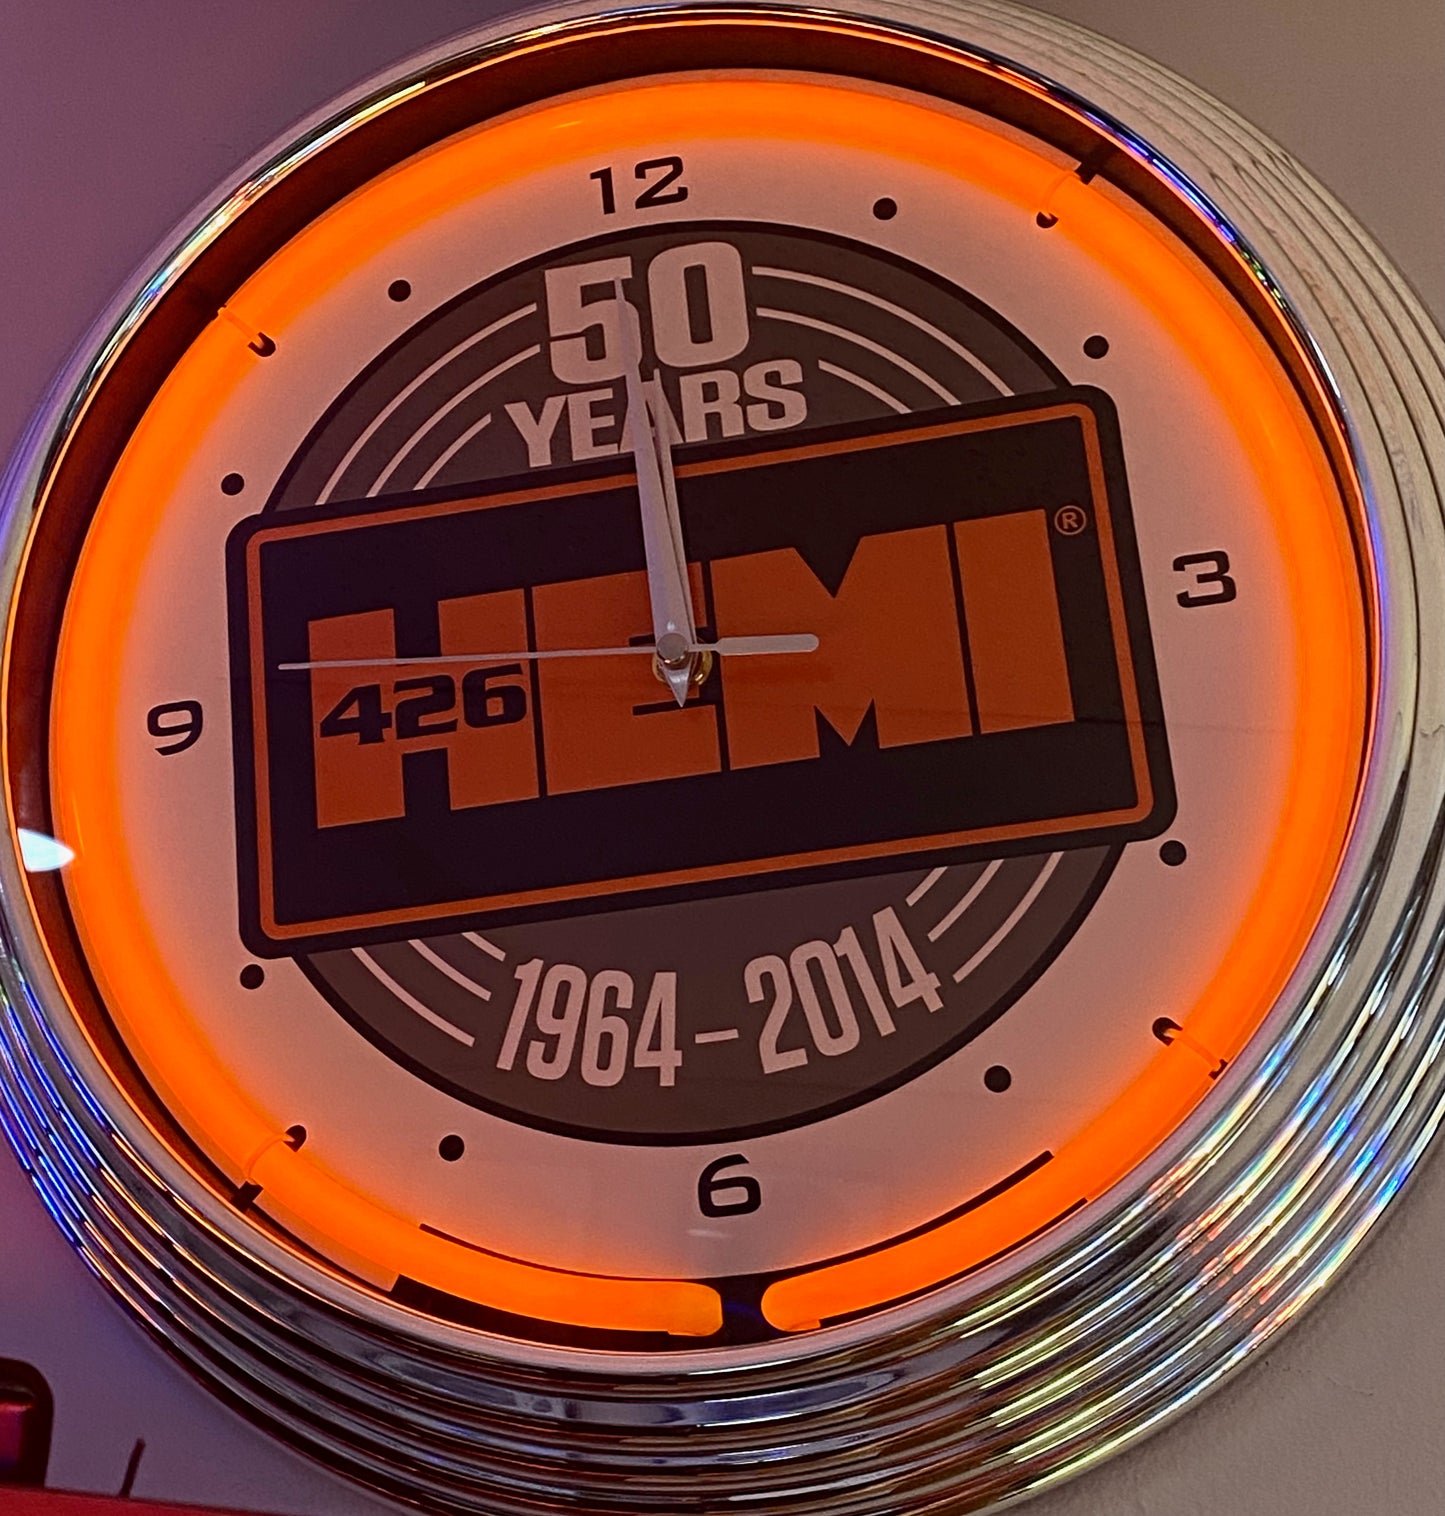 50th Anniversary Hemi Neon Clock